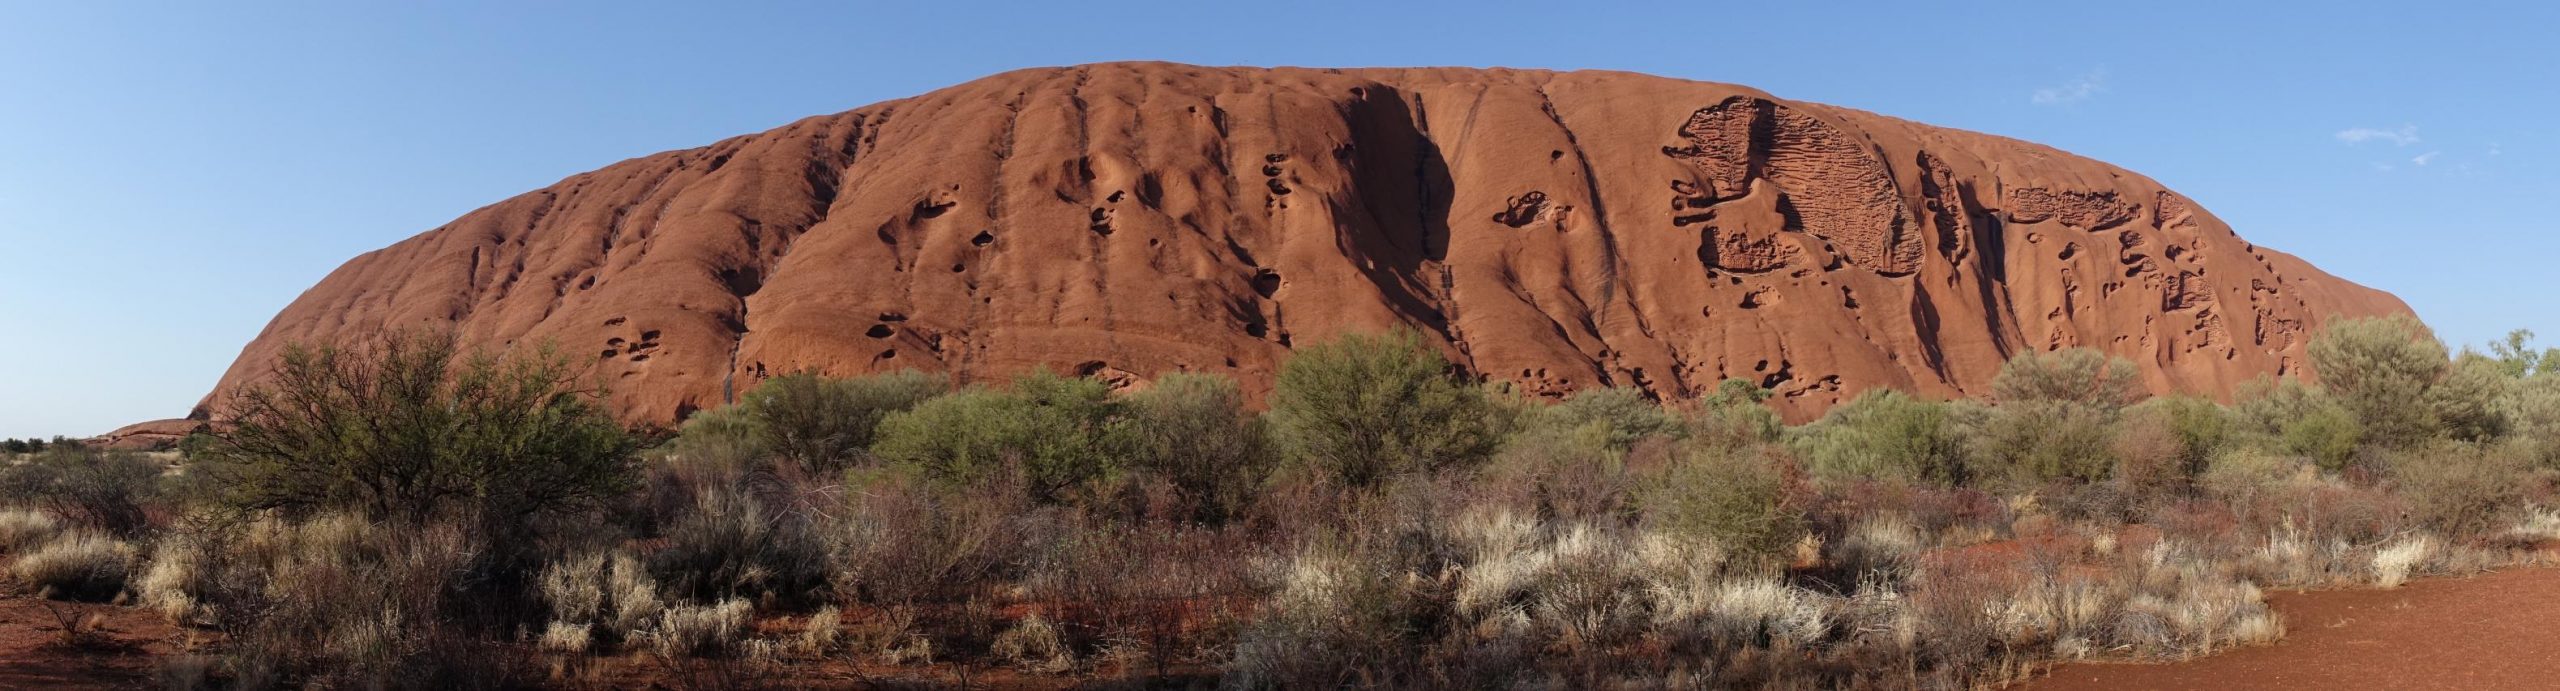 Que ver y hacer en Uluru (Ayers Rock)